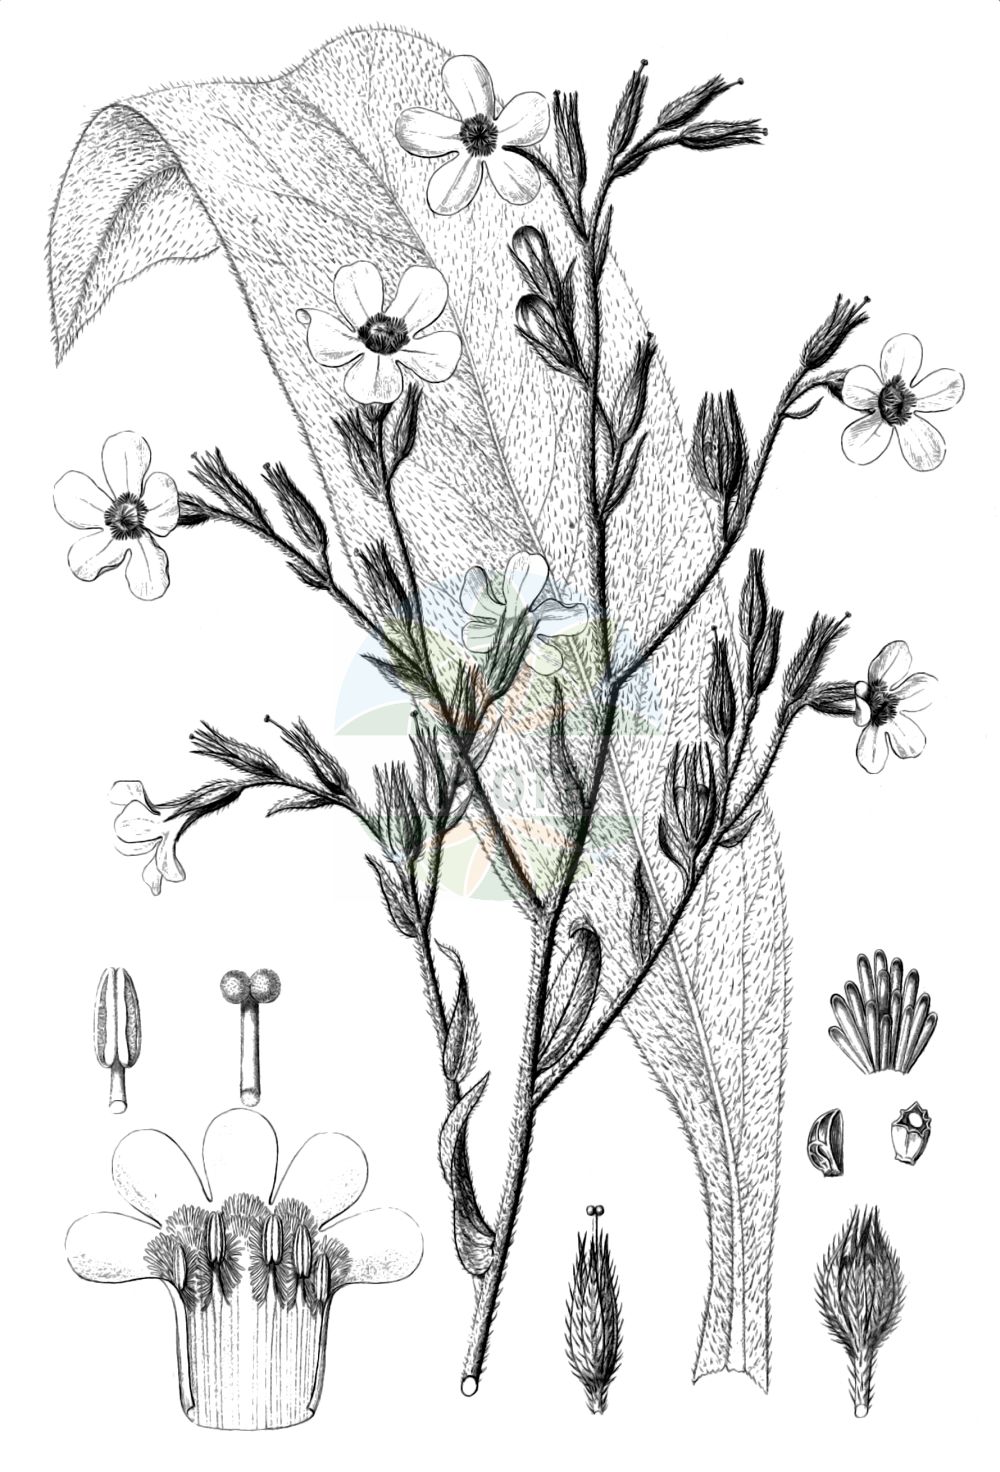 Historische Abbildung von Anchusa azurea (Italienische Ochsenzunge - Garden Anchusa). Das Bild zeigt Blatt, Bluete, Frucht und Same. ---- Historical Drawing of Anchusa azurea (Italienische Ochsenzunge - Garden Anchusa). The image is showing leaf, flower, fruit and seed.(Anchusa azurea,Italienische Ochsenzunge,Garden Anchusa,Anchusa azurea,Anchusa biceps,Anchusa italica,Anchusa macrocarpa,Anchusa macrophylla,Anchusa paniculata,Buglossum italicum,Buglossum vulgare,Italienische Ochsenzunge,Garden Anchusa,Italian Alkanet,Italian Bugloss,Large Blue Alkanet,Anchusa,Ochsenzunge,Bugloss,Boraginaceae,Raublattgewächse,Forget-me-Not family,Blatt,Bluete,Frucht,Same,leaf,flower,fruit,seed,Reichenbach (1823-1832))